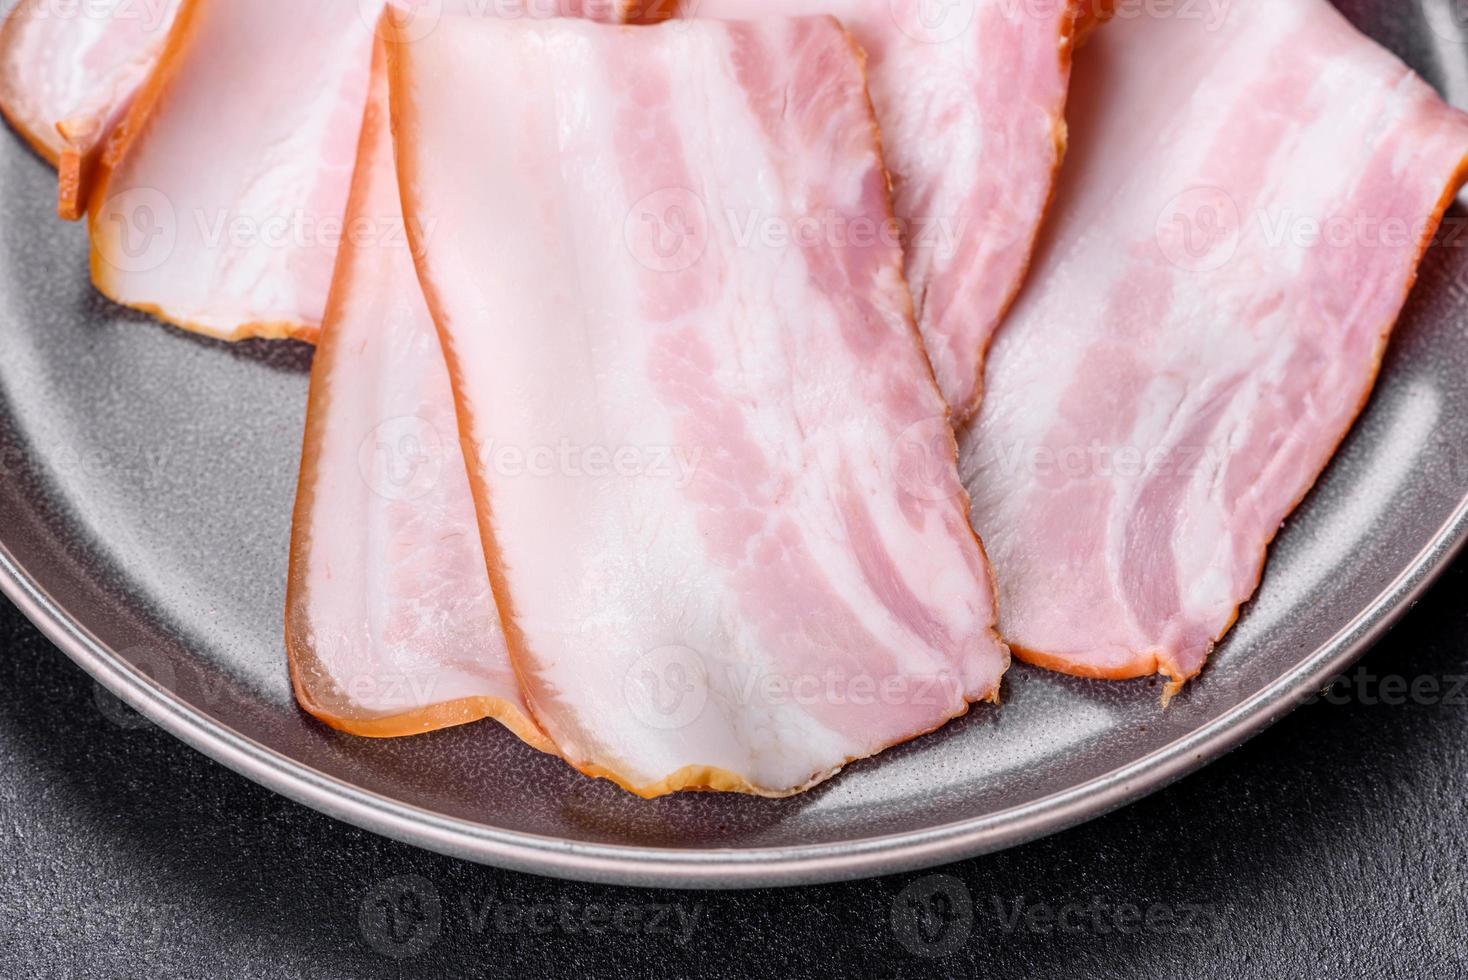 delicioso bacon cru fresco cortado com fatias em uma placa cinza contra um fundo escuro de concreto foto